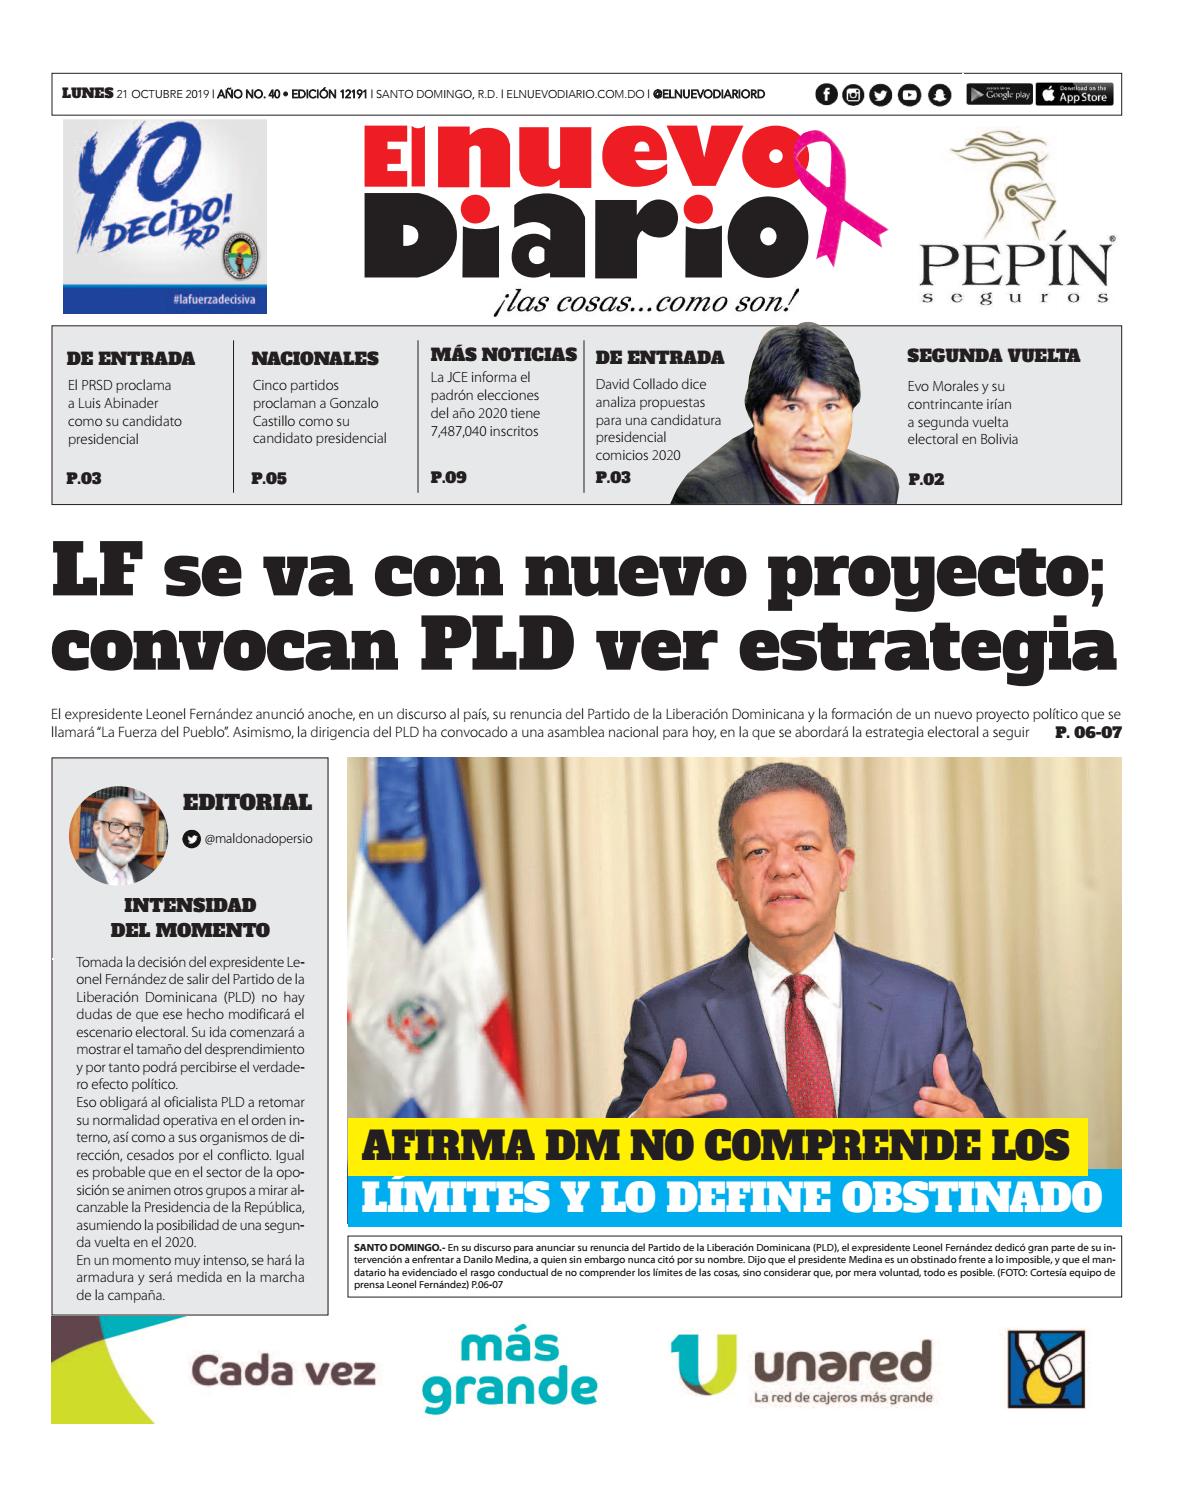 Portada Periódico El Nuevo Diario, Lunes 21 de Octubre, 2019